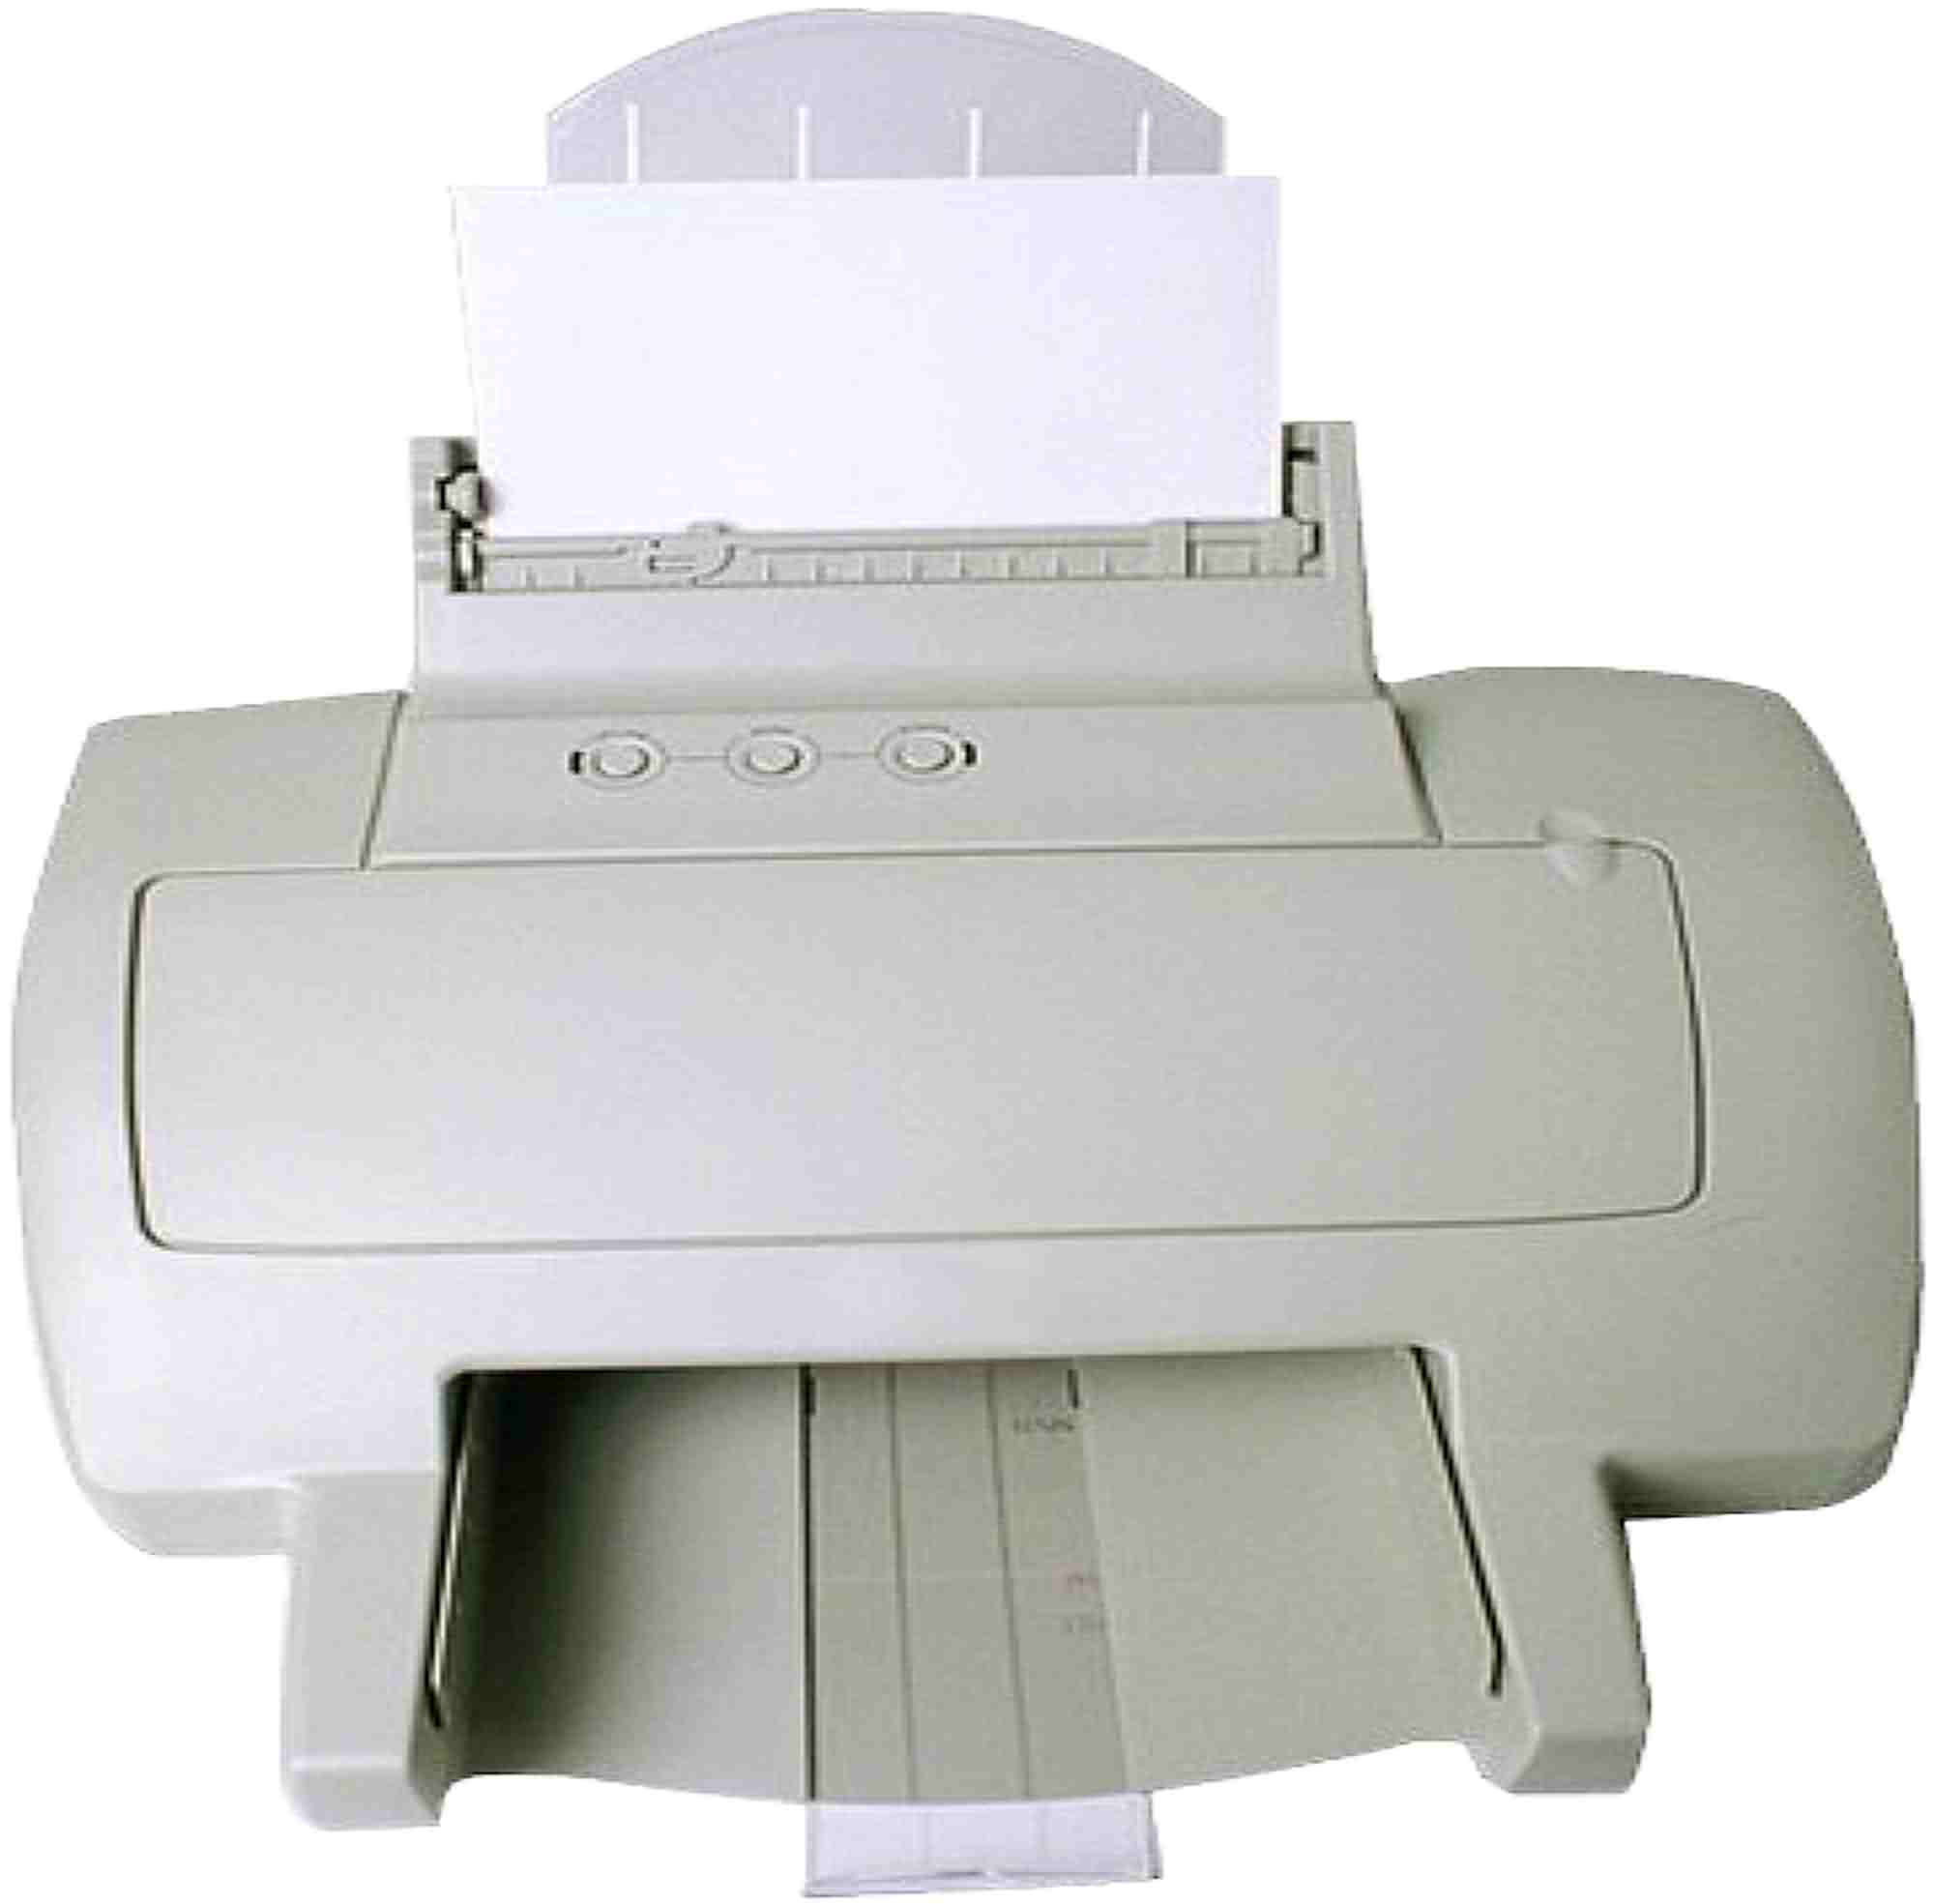 Drucker zieht Papier schief ein / Verursacht Papierstau